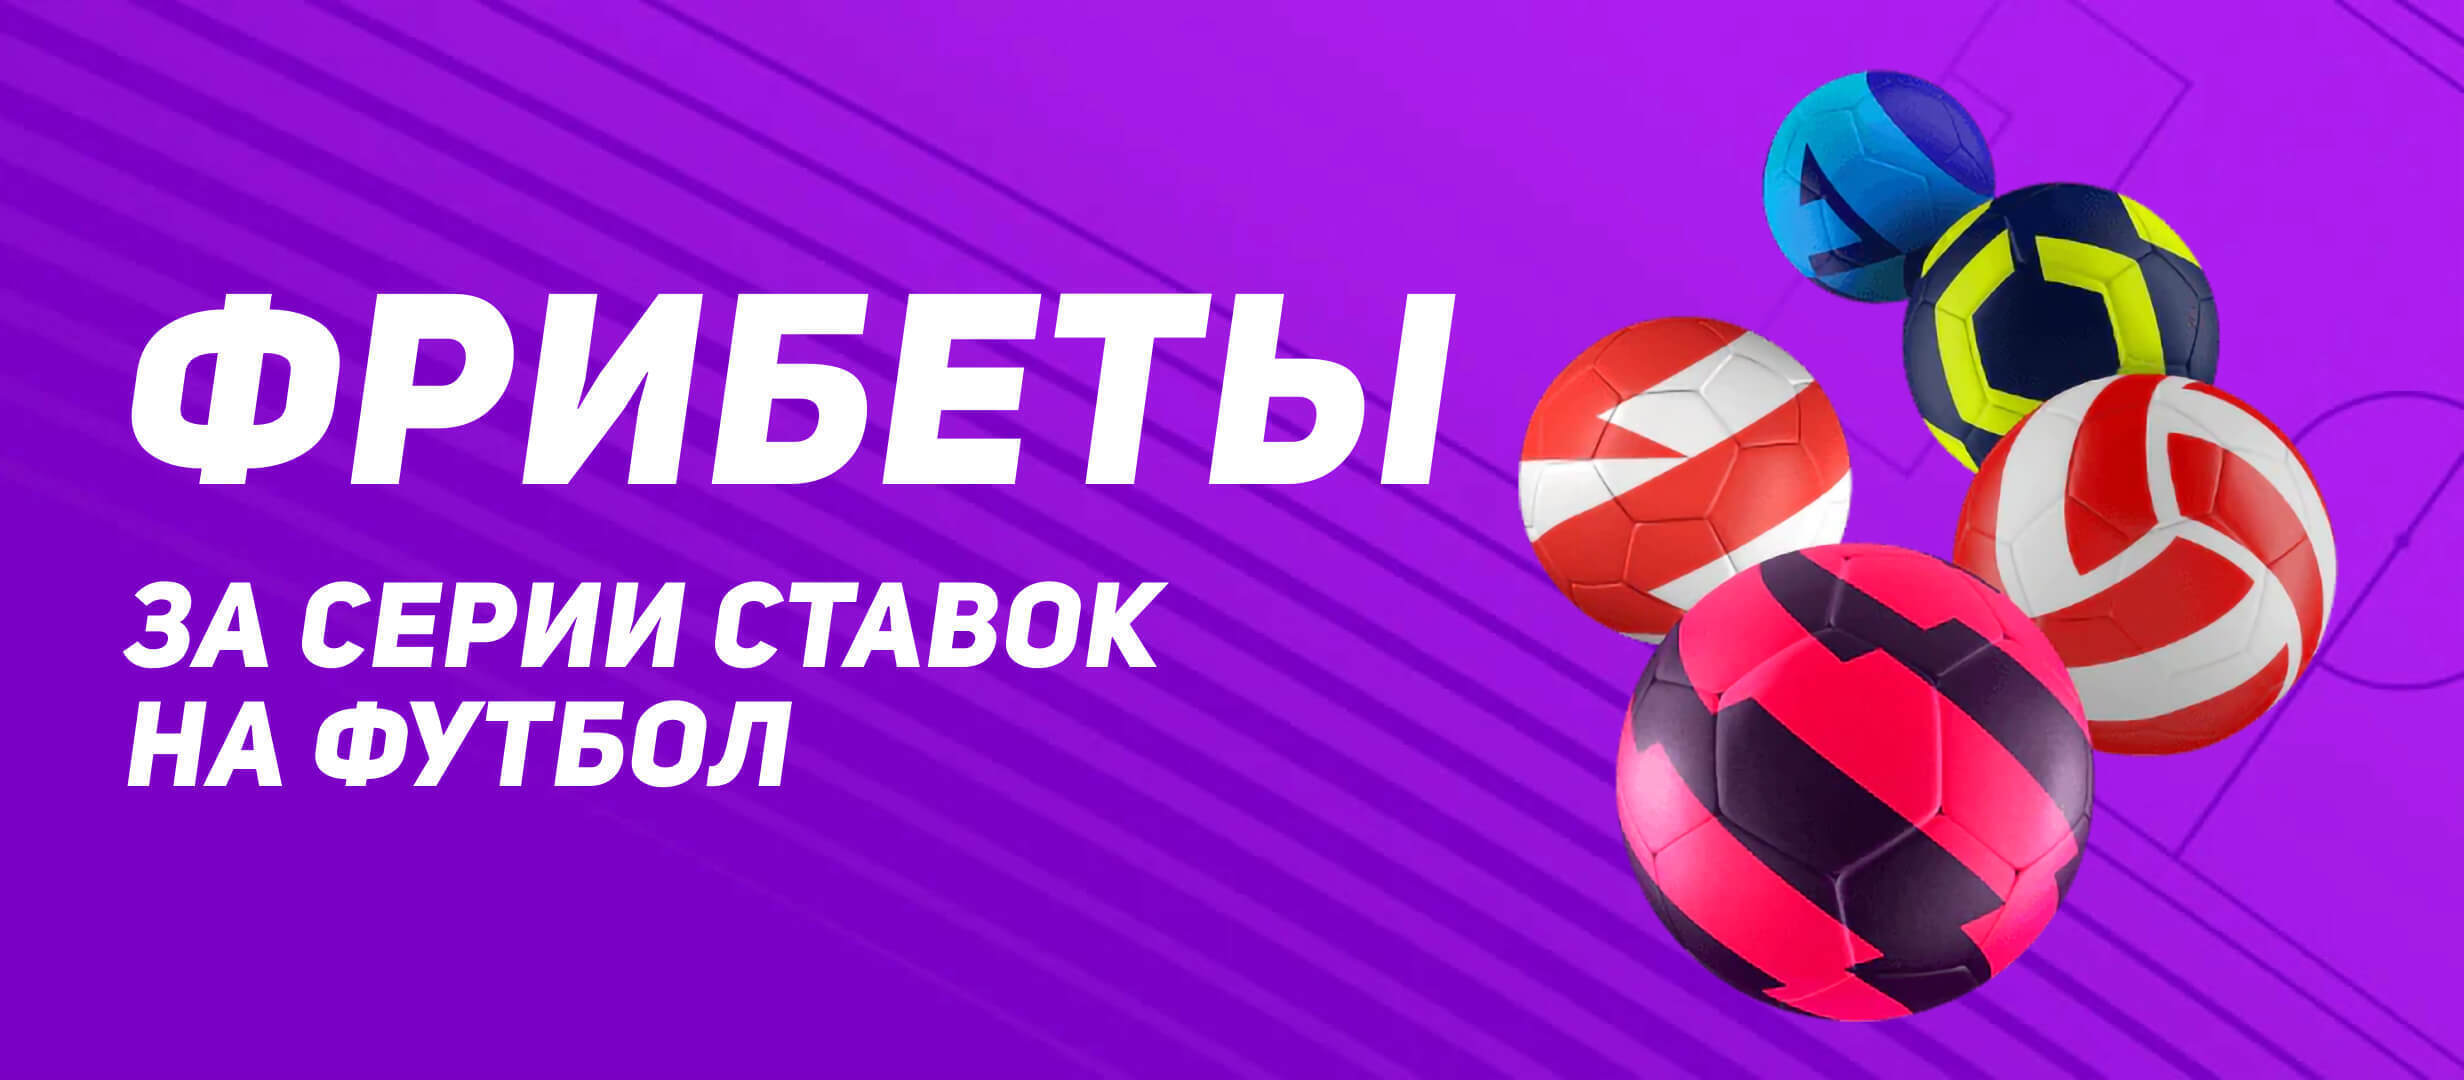 BK Leon nachislyaet fribet do 2 500 rublej za stavki na evropejskij futbol